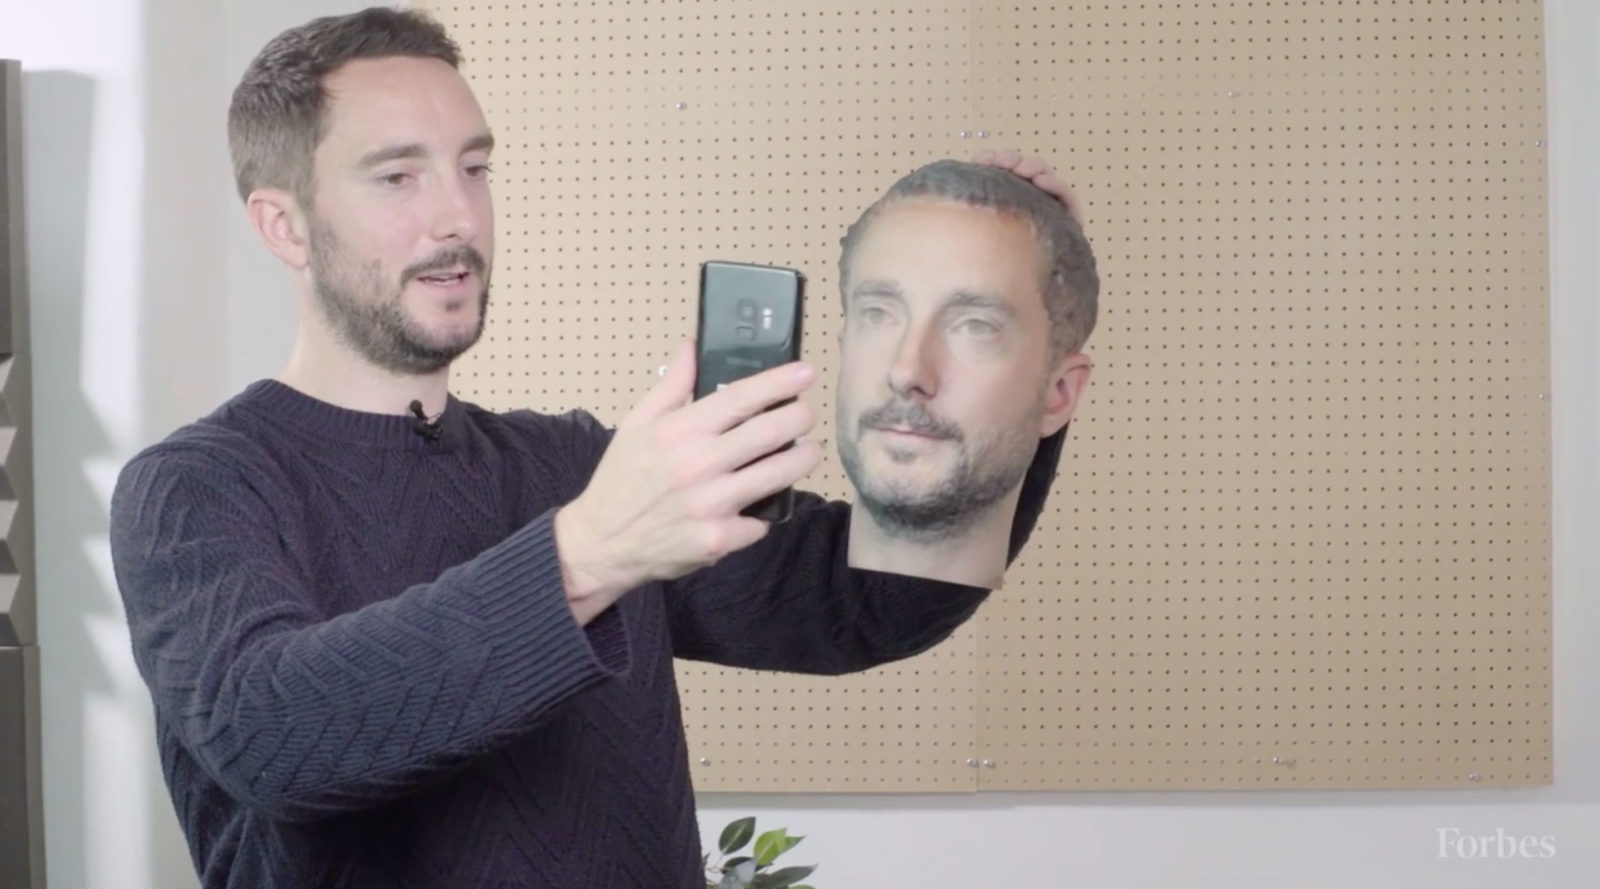 Il redattore di Forbes mentre prova a sbloccare uno smartphone ingannandolo con il volto ricostruito in 3D